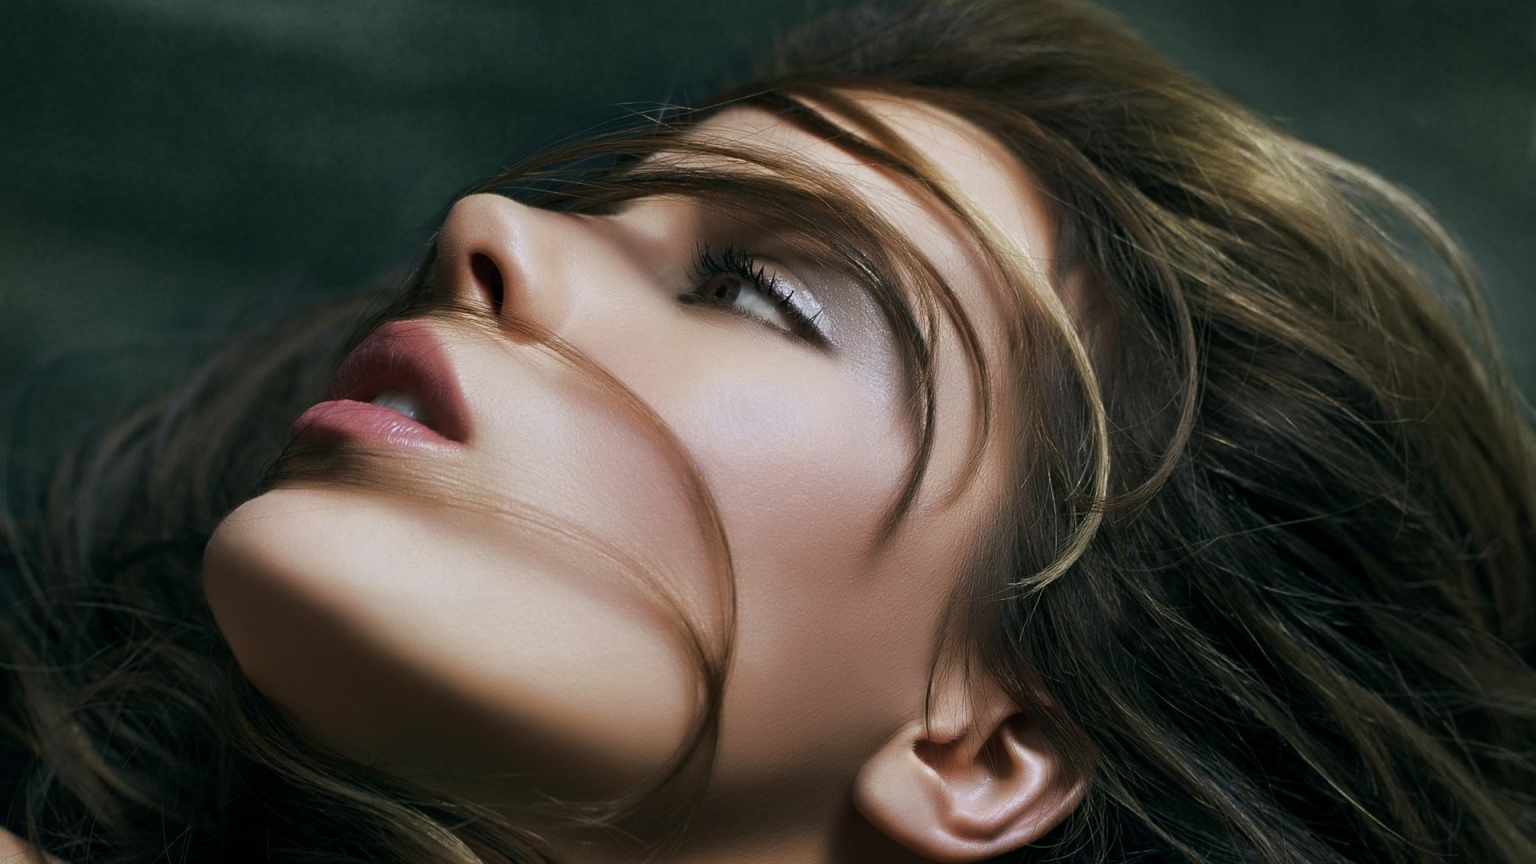 Kate Beckinsale Glamorous for 1536 x 864 HDTV resolution